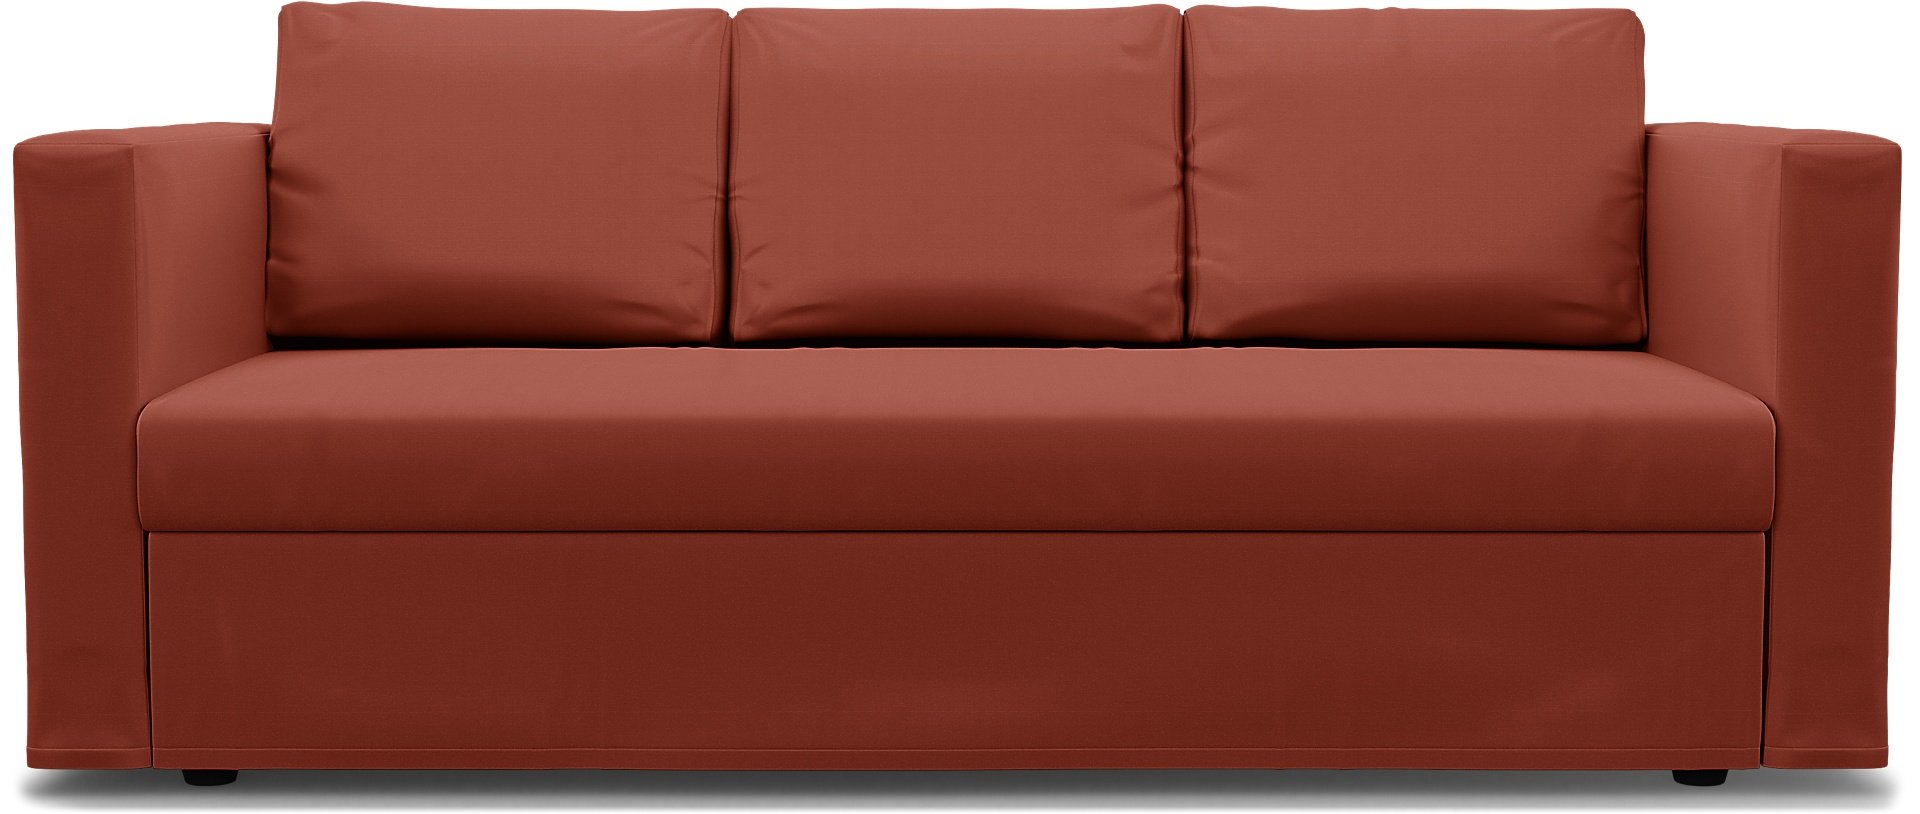 IKEA - Friheten 3 Seater Sofa Bed Cover, Burnt Orange, Cotton - Bemz